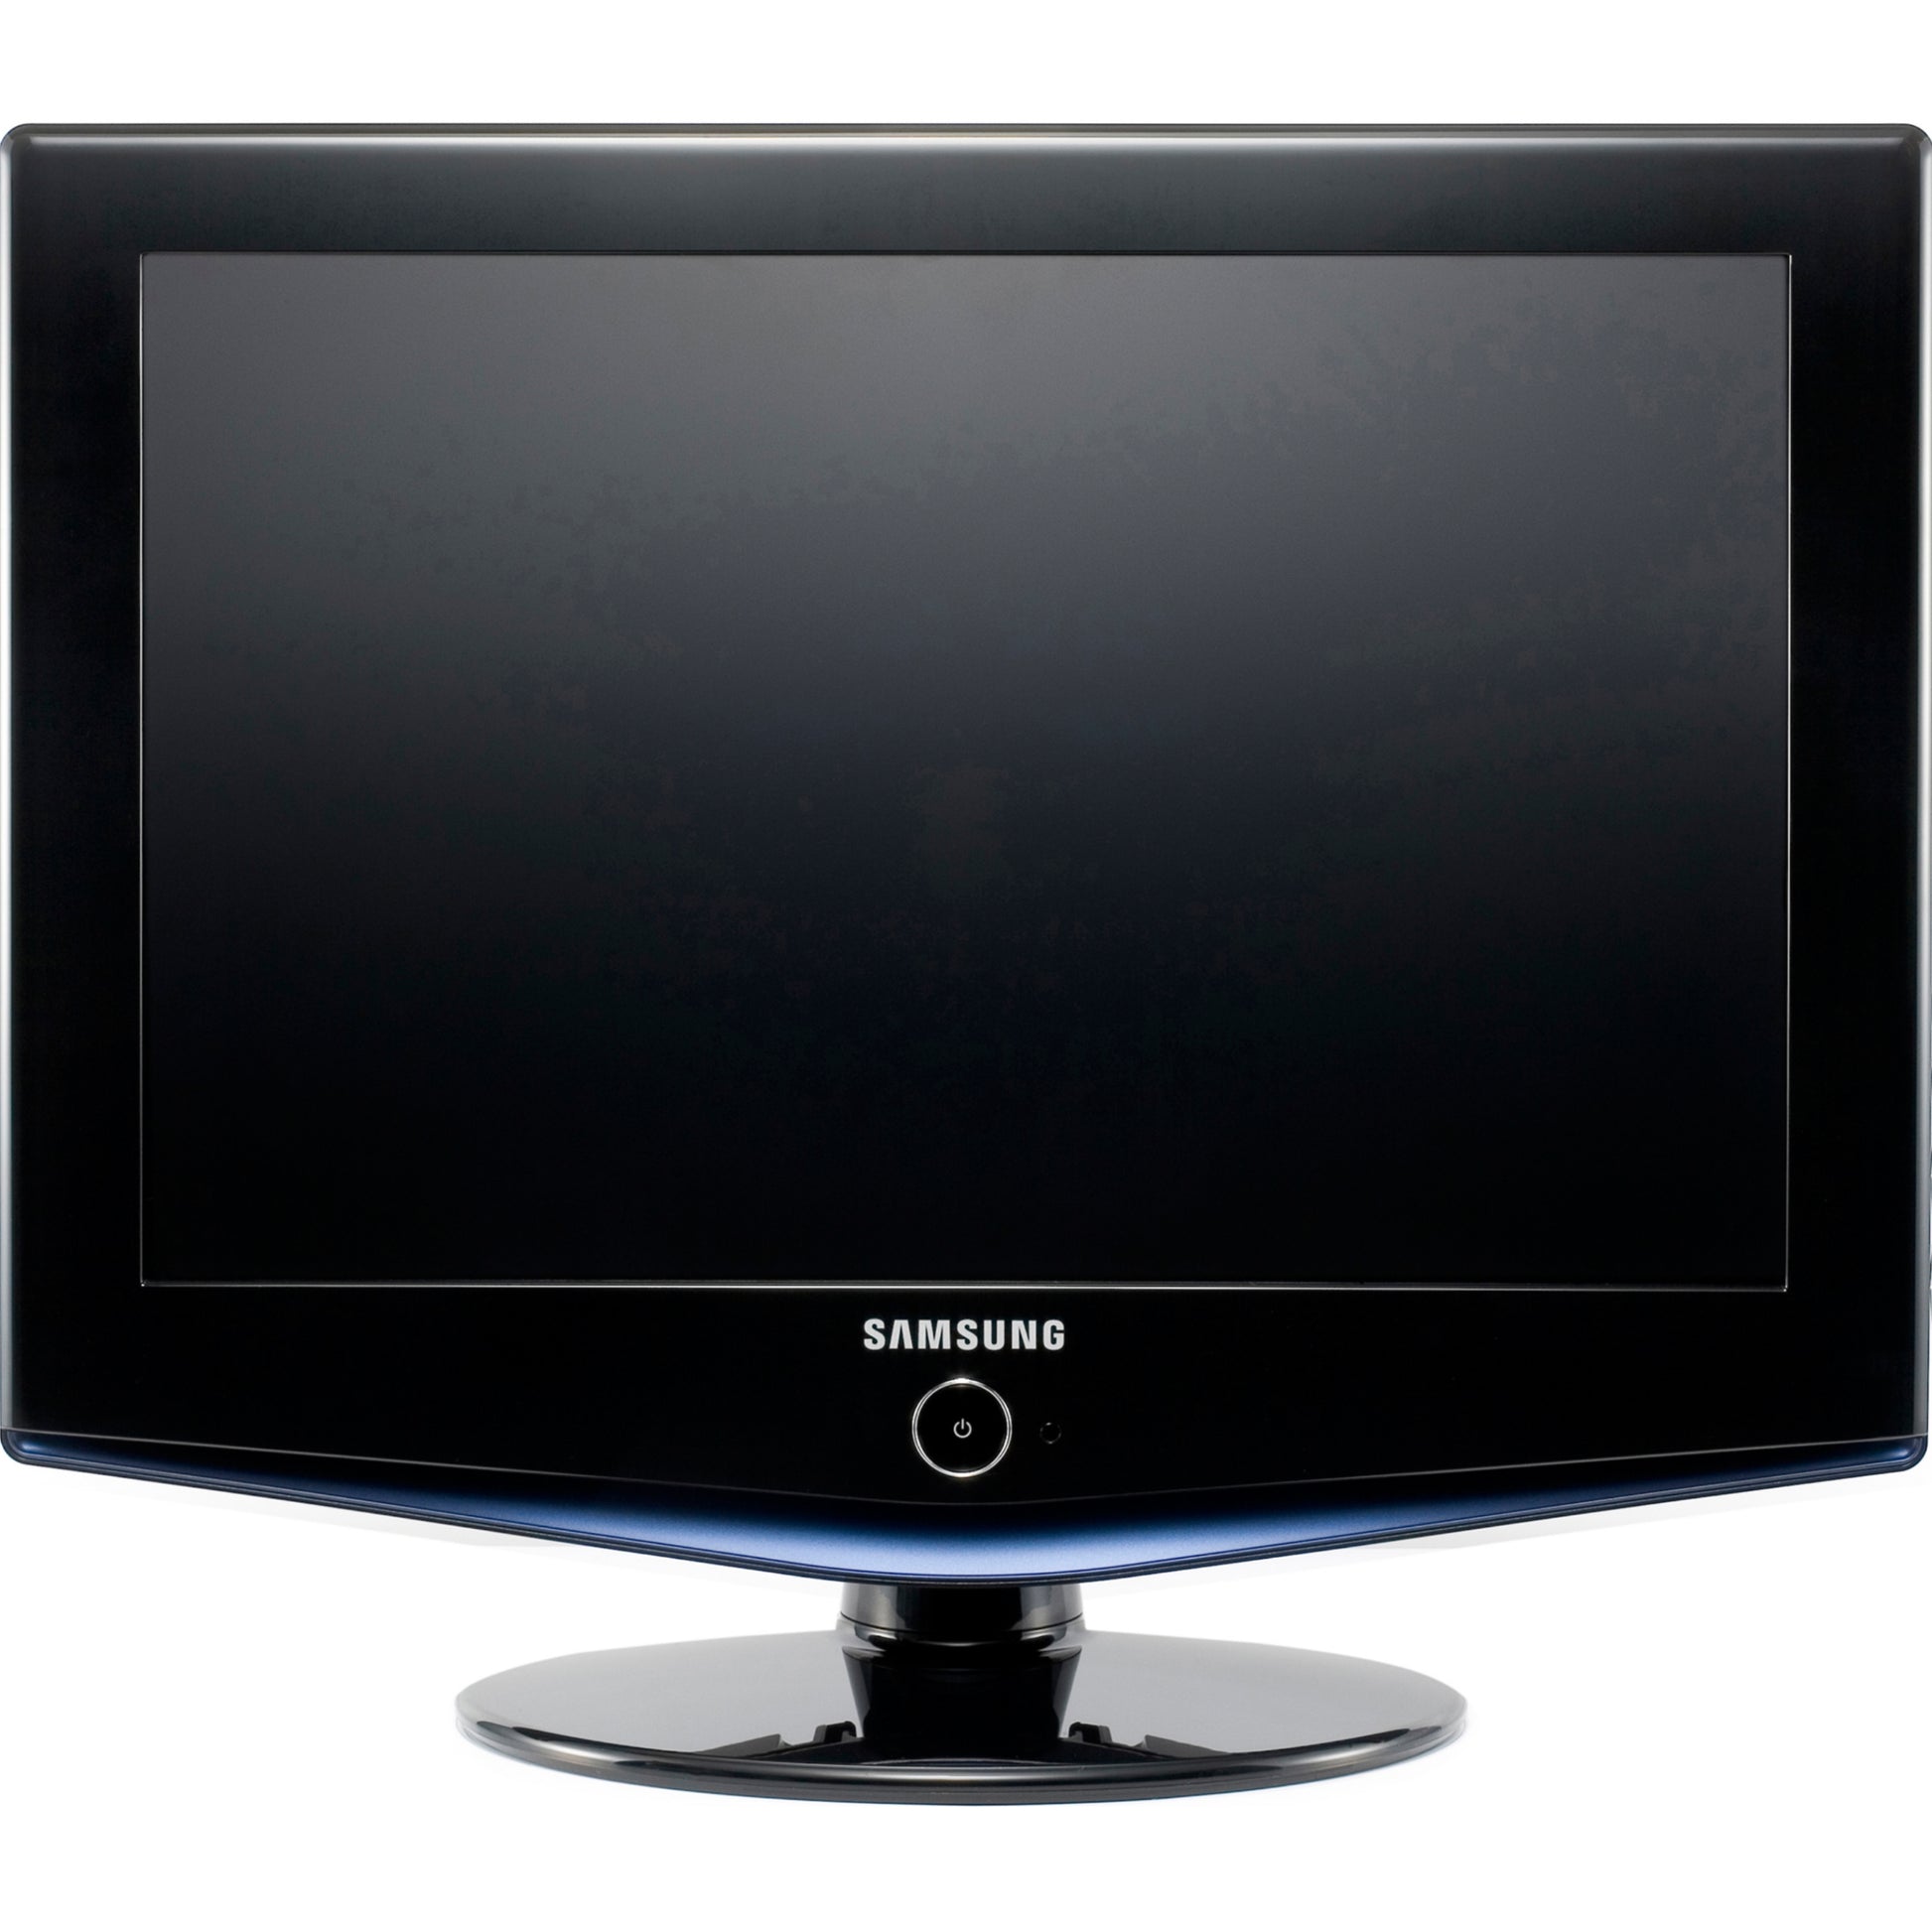 SAMSUNG 19 Inch LE19R71B HD Ready LCD TV - London Used